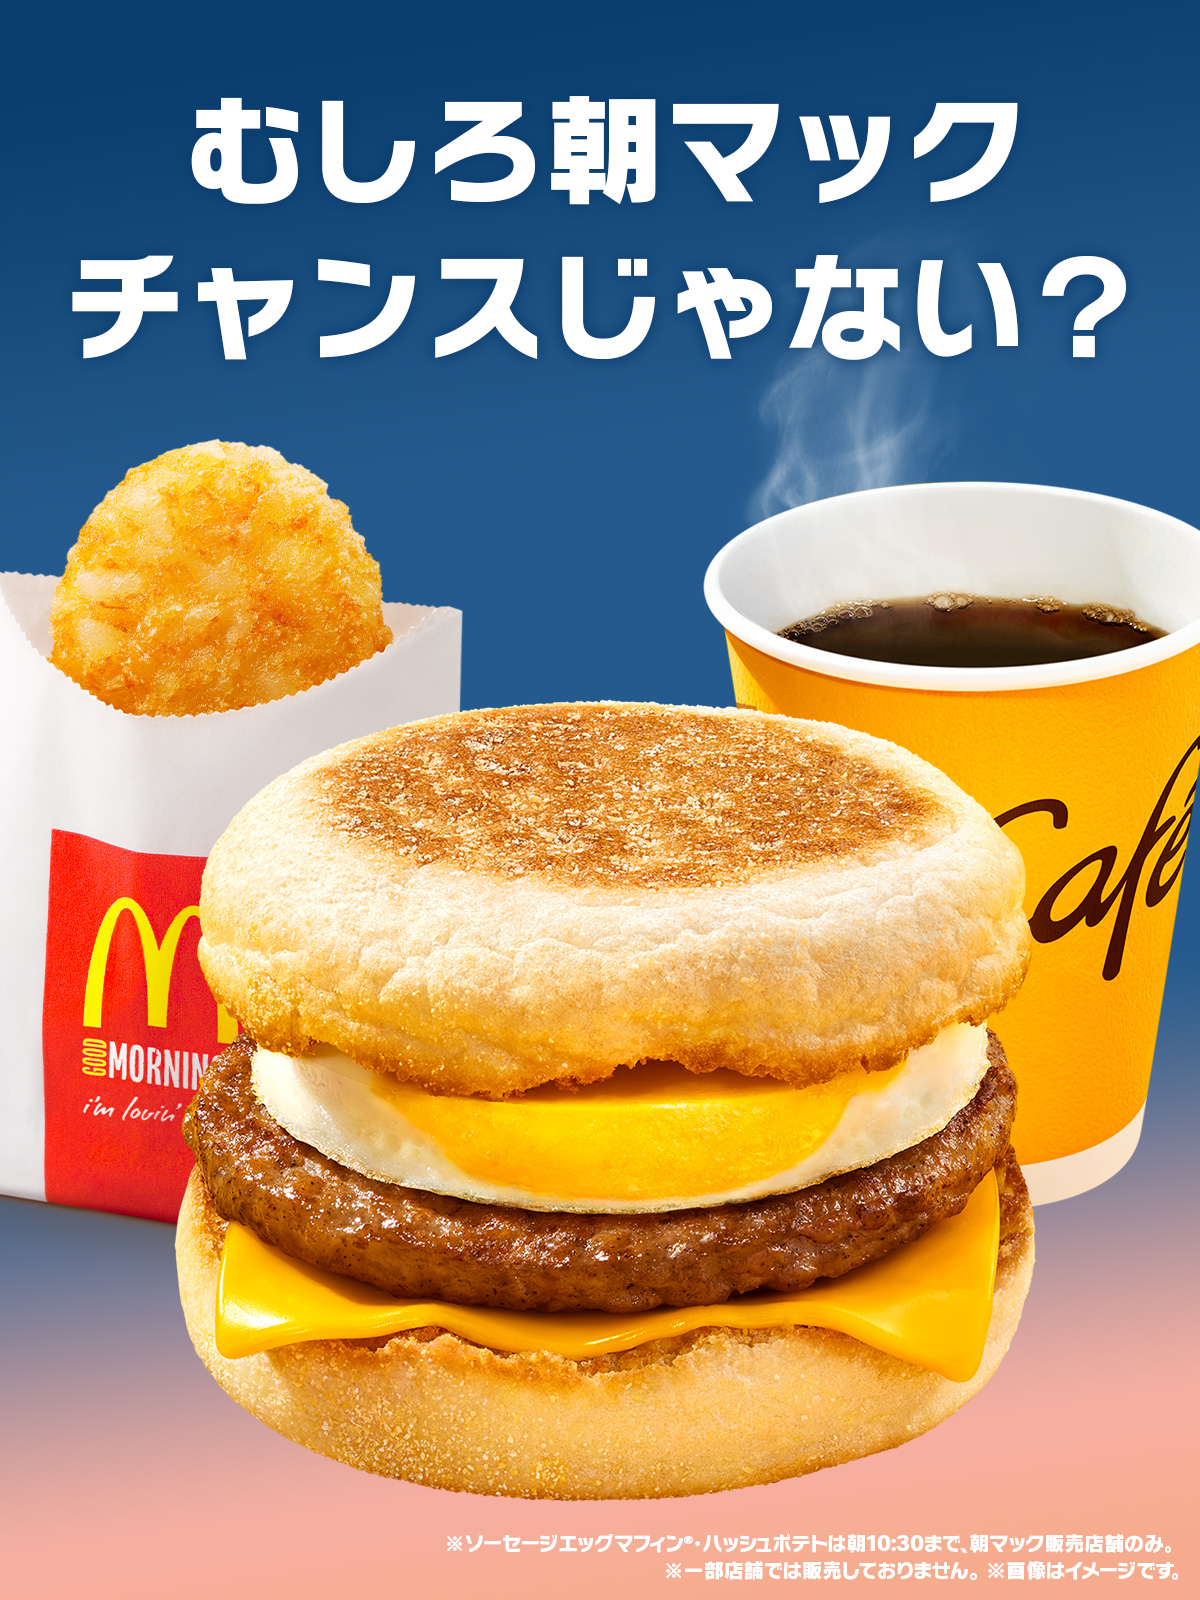 マクドナルド (@McDonaldsJapan) / Twitter